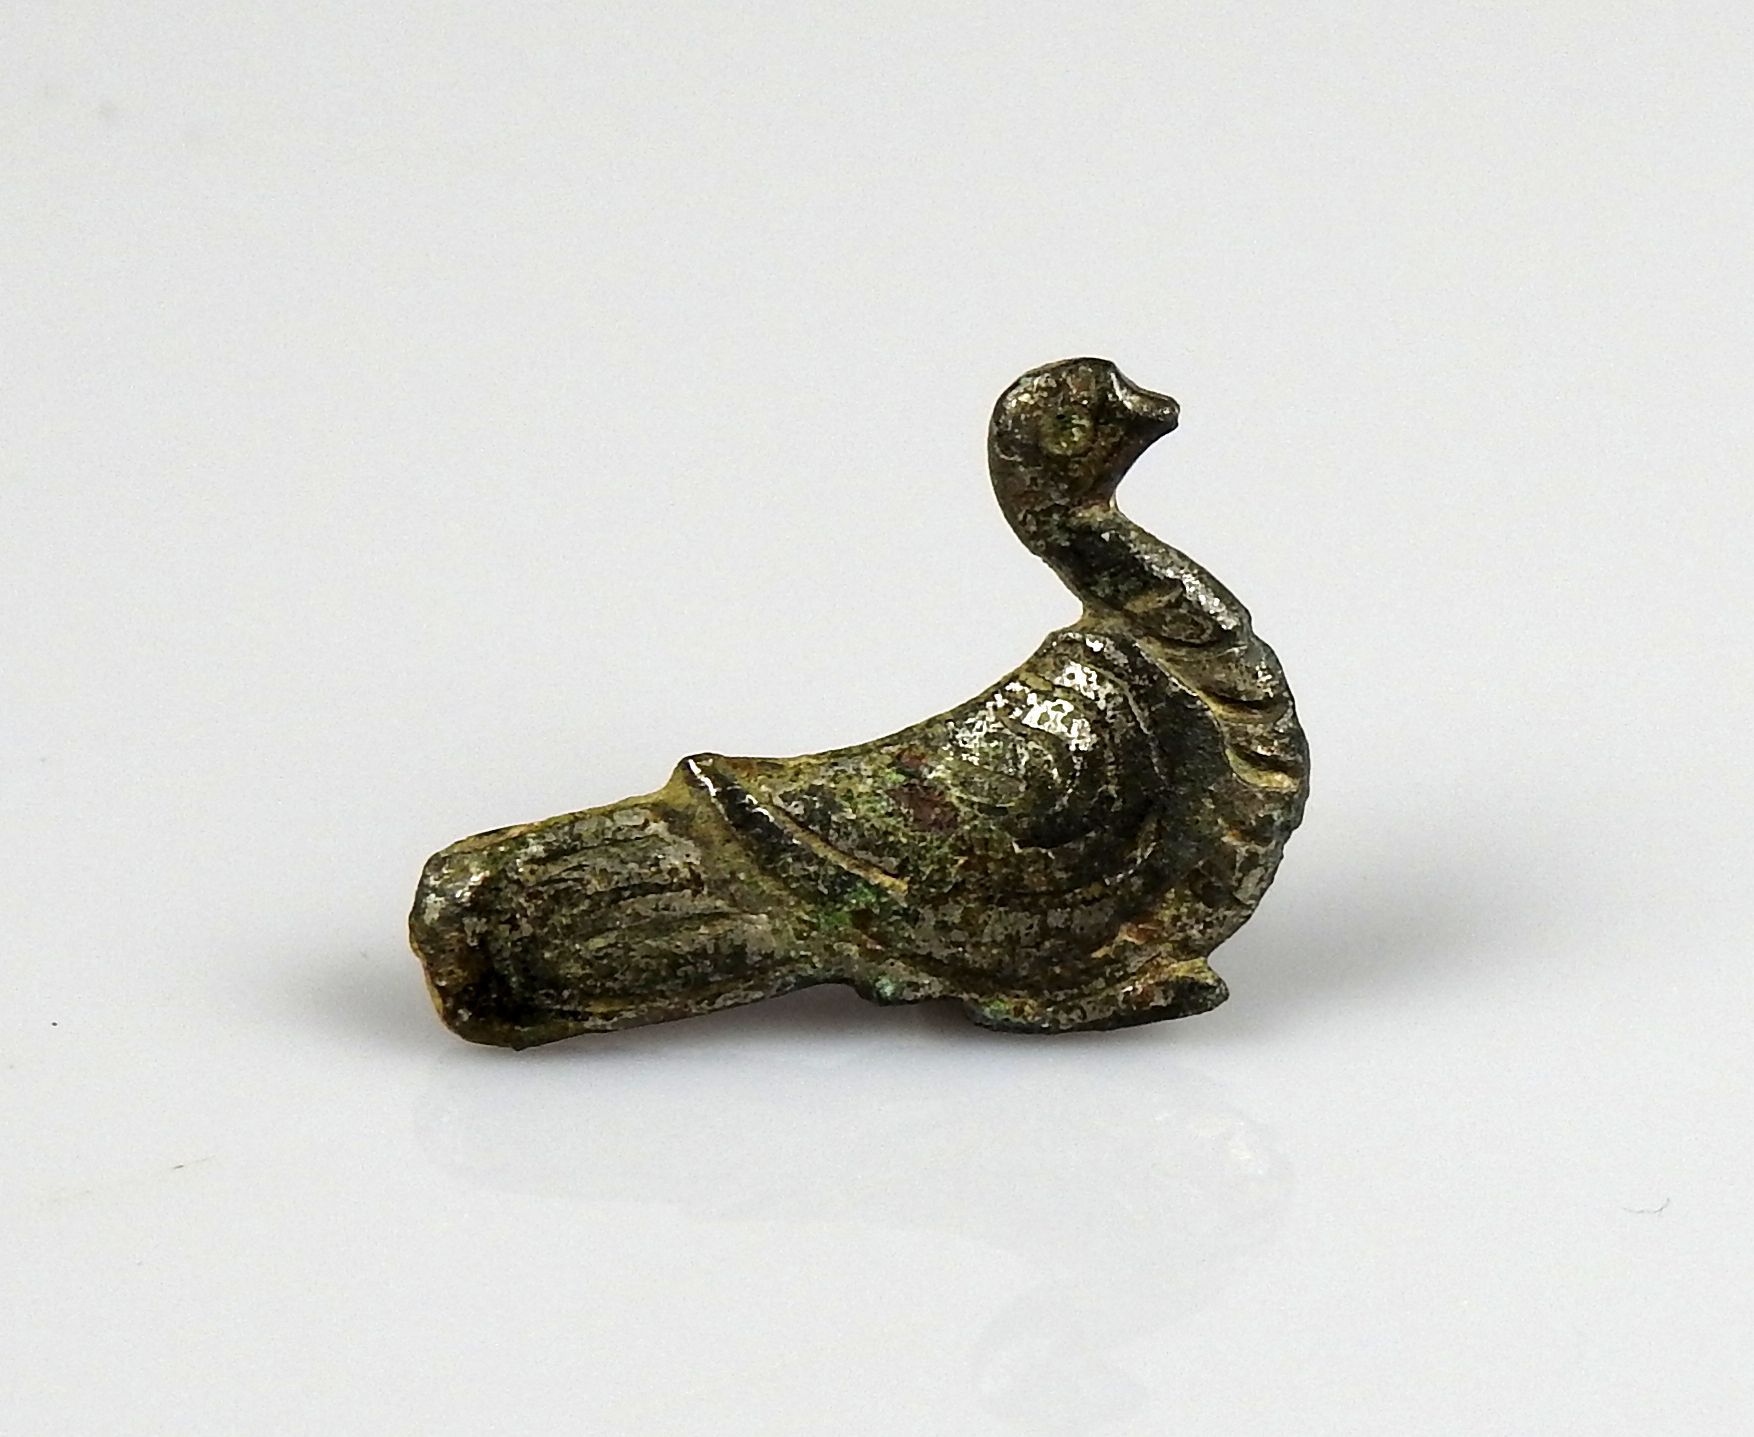 Null 代表一只鸟的腓骨

前19世纪某省著名人士的收藏

镀锡青铜2.2厘米

罗马时期 1-3世纪